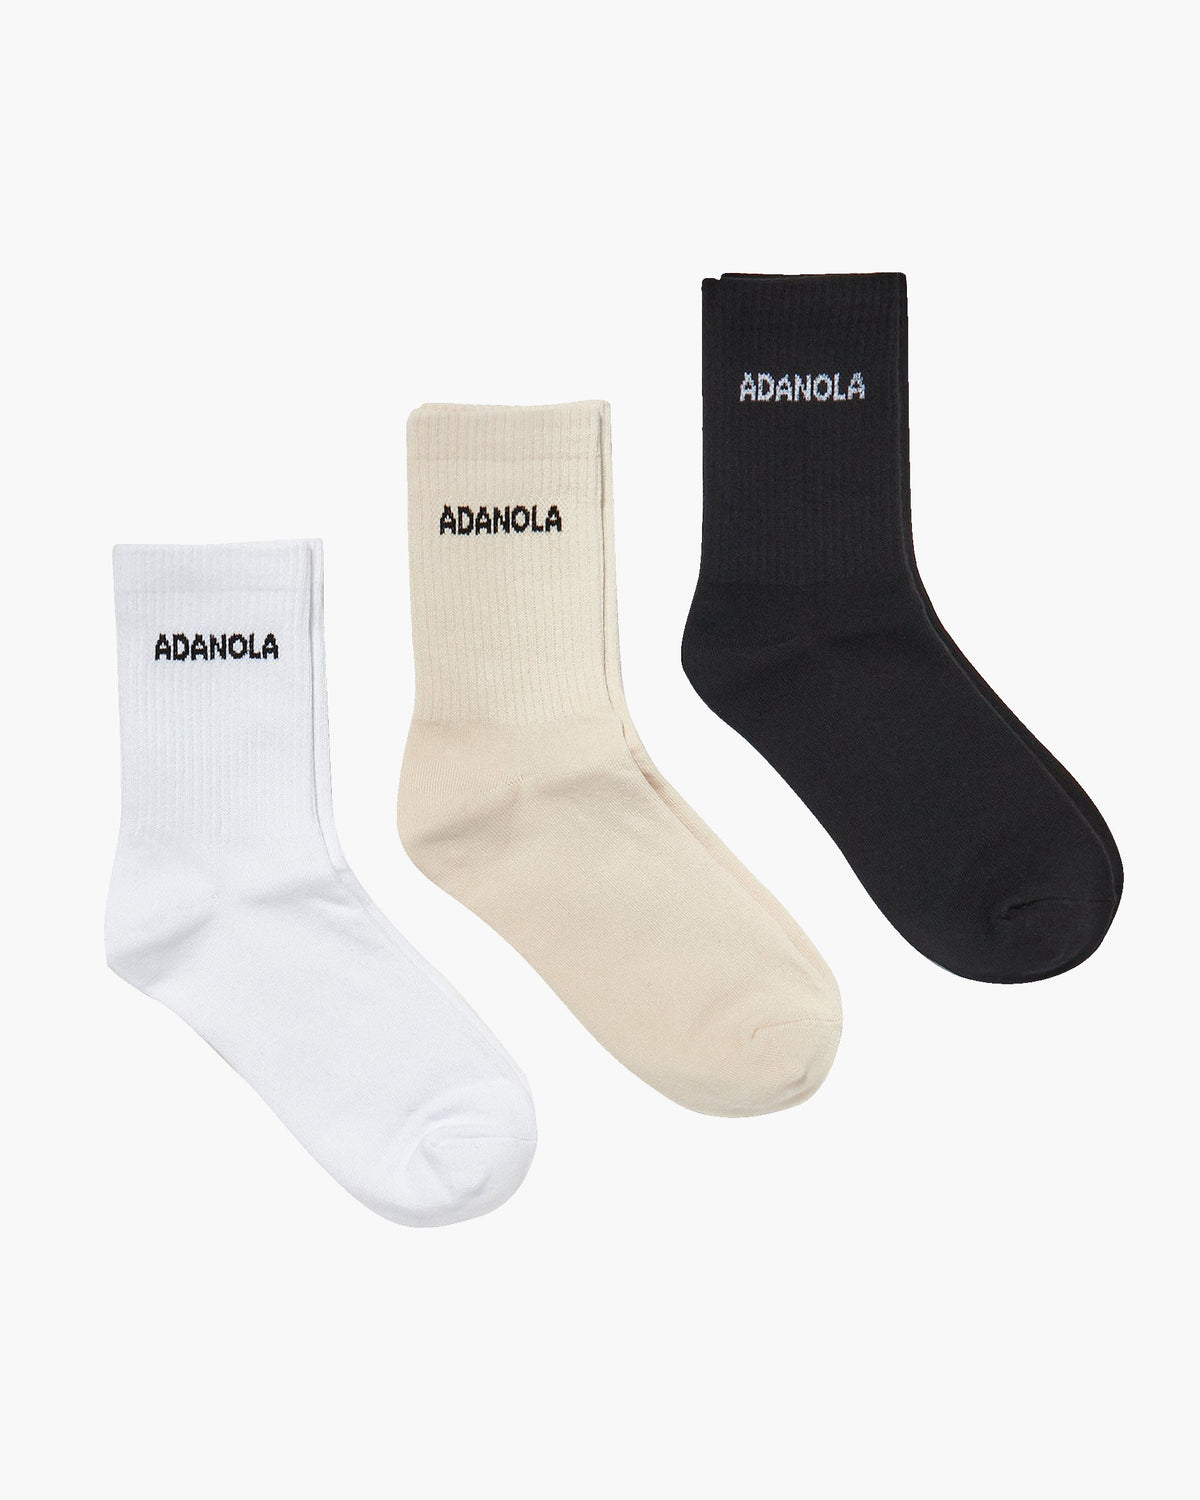 3-Pack Women's Cotton Socks in Cream, White, Black